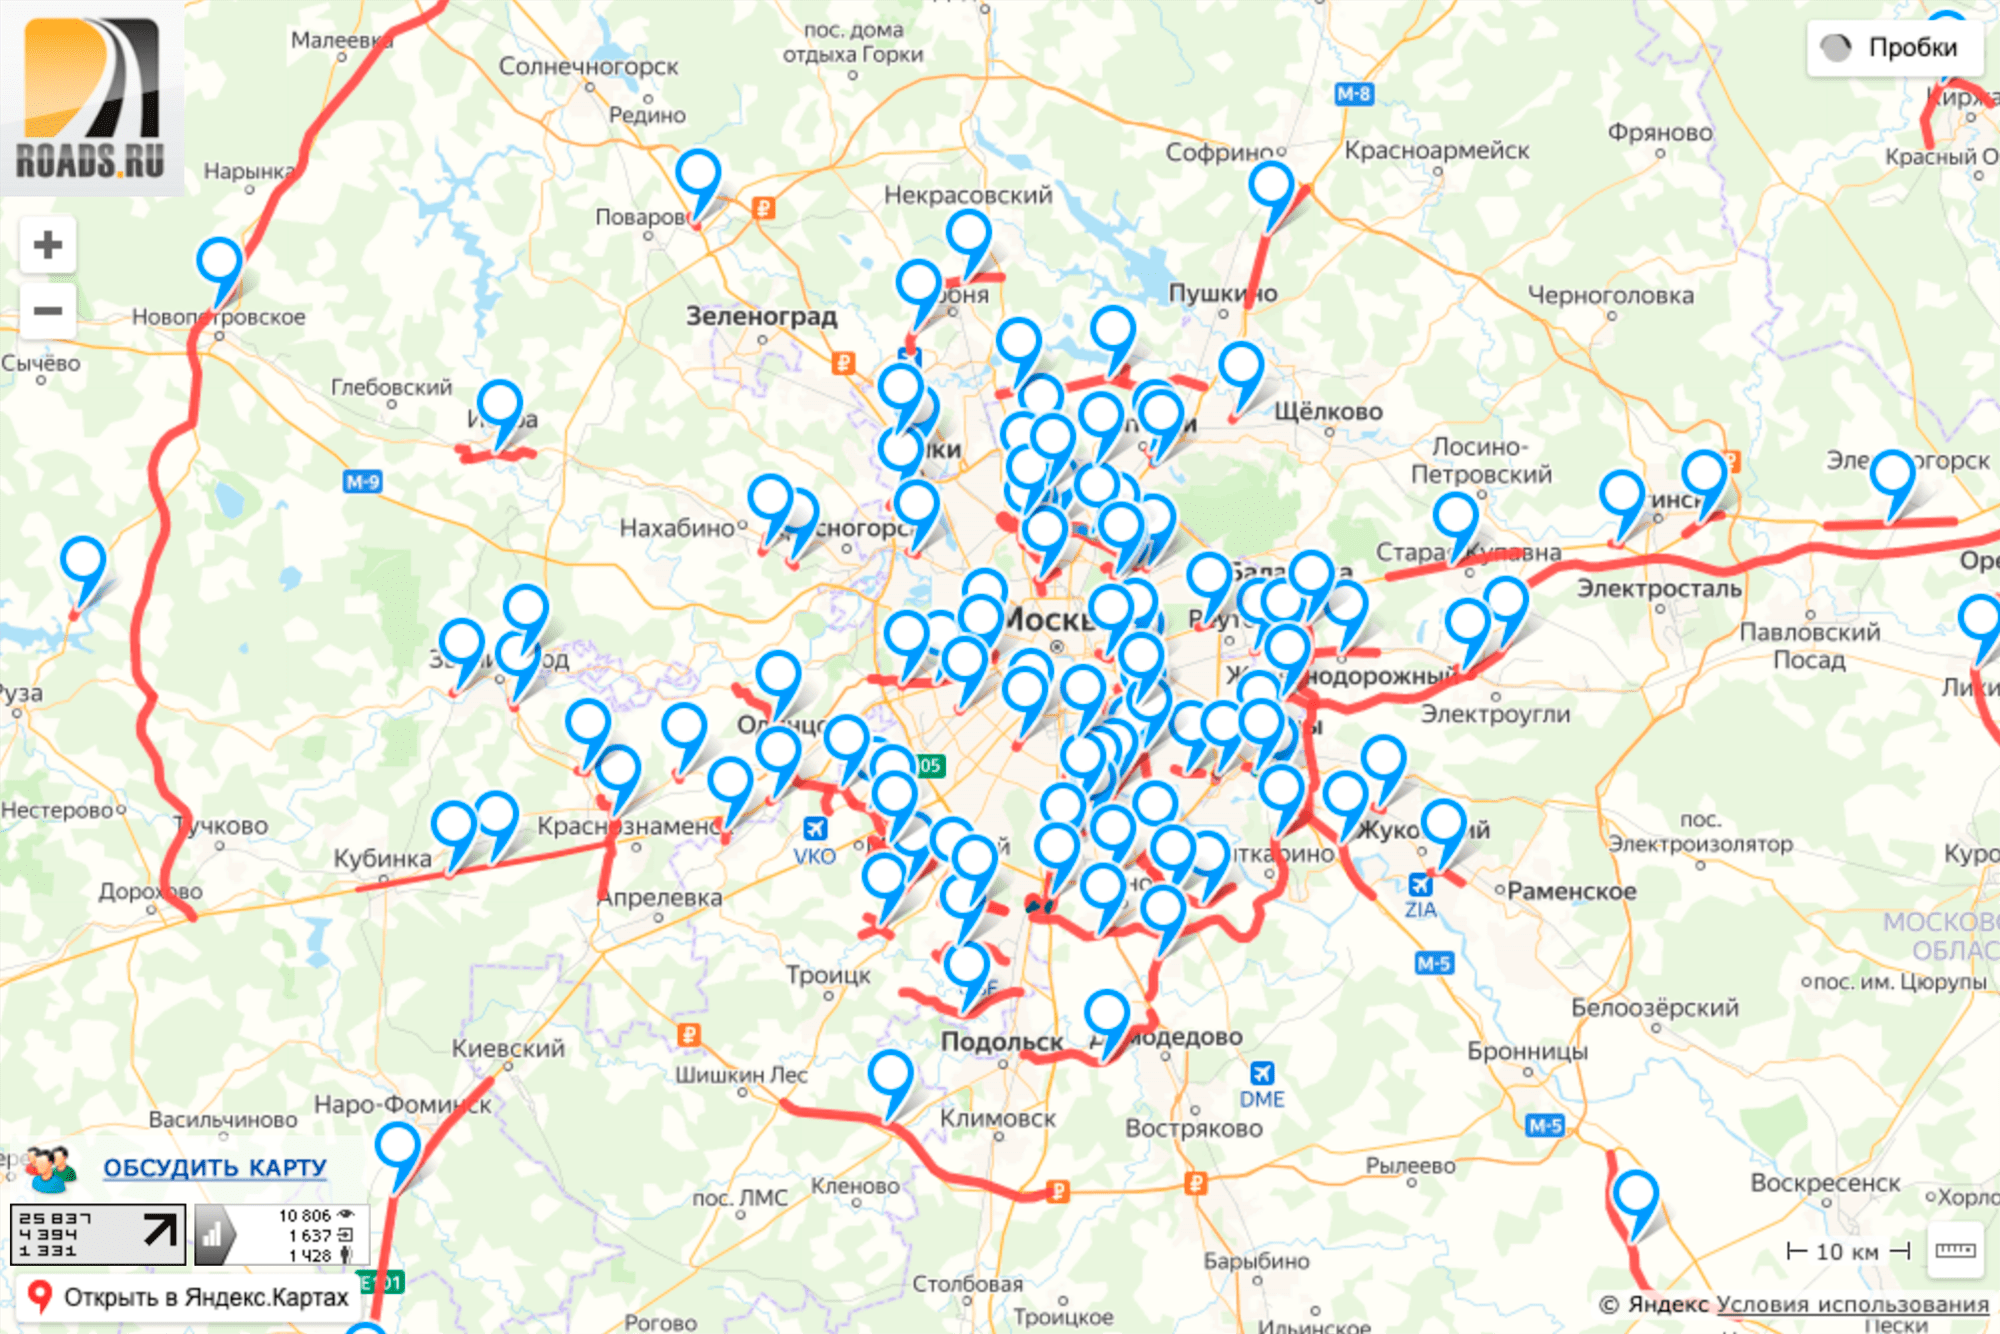 Помимо самой карты со строящимися и перспективными дорогами на сайте roads.ru много полезной информации о развитии транспортной системы Москвы и других регионов